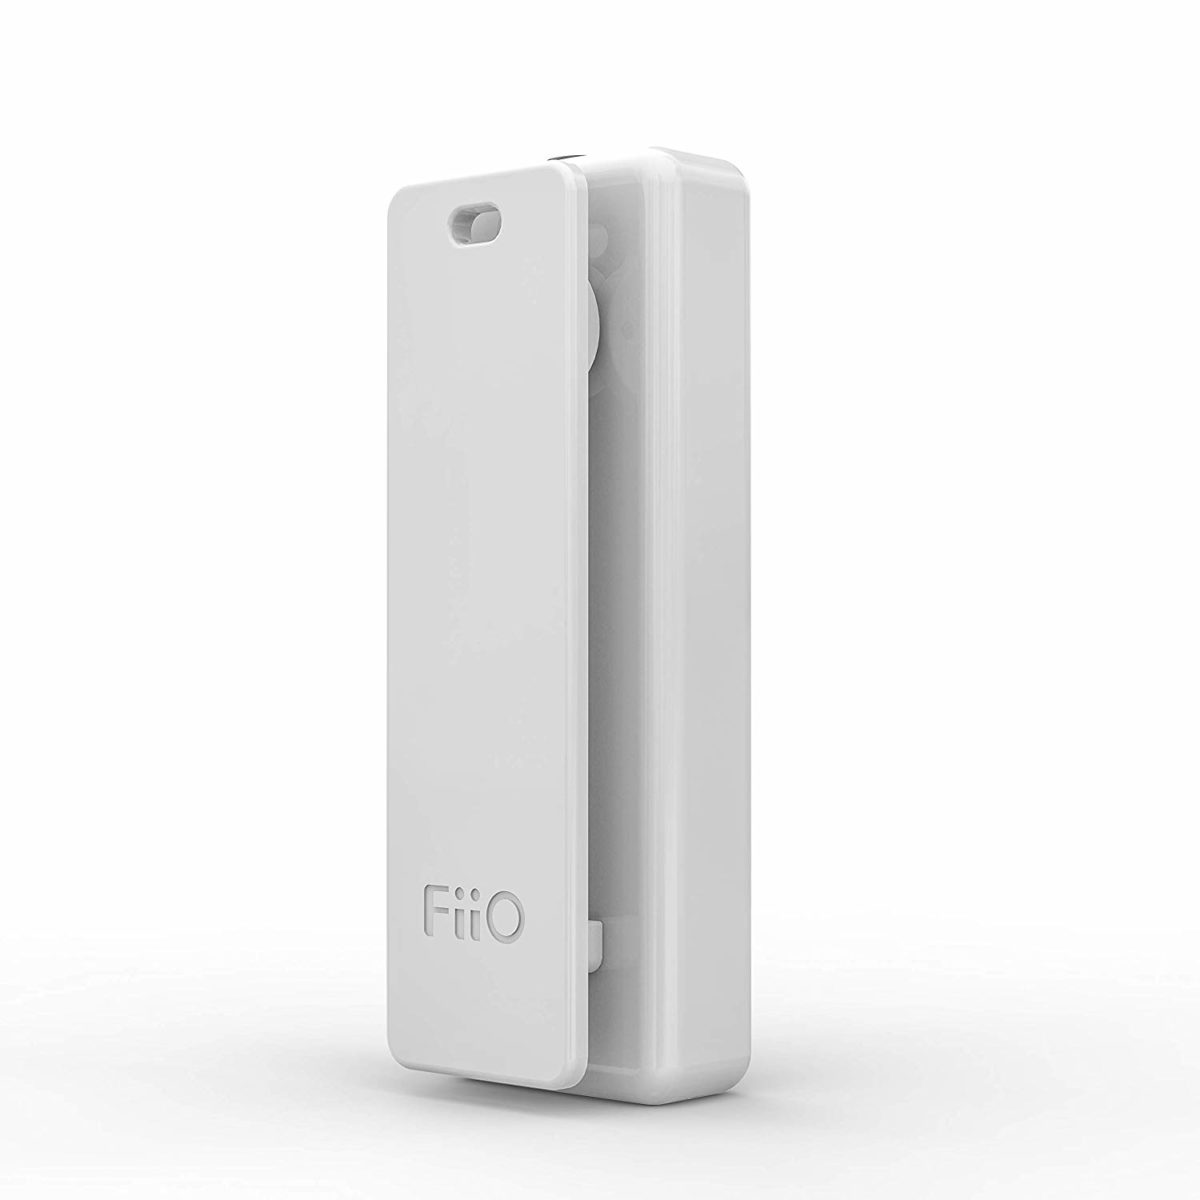 FiiO μbtr Bluetooth Receiver penguin.com